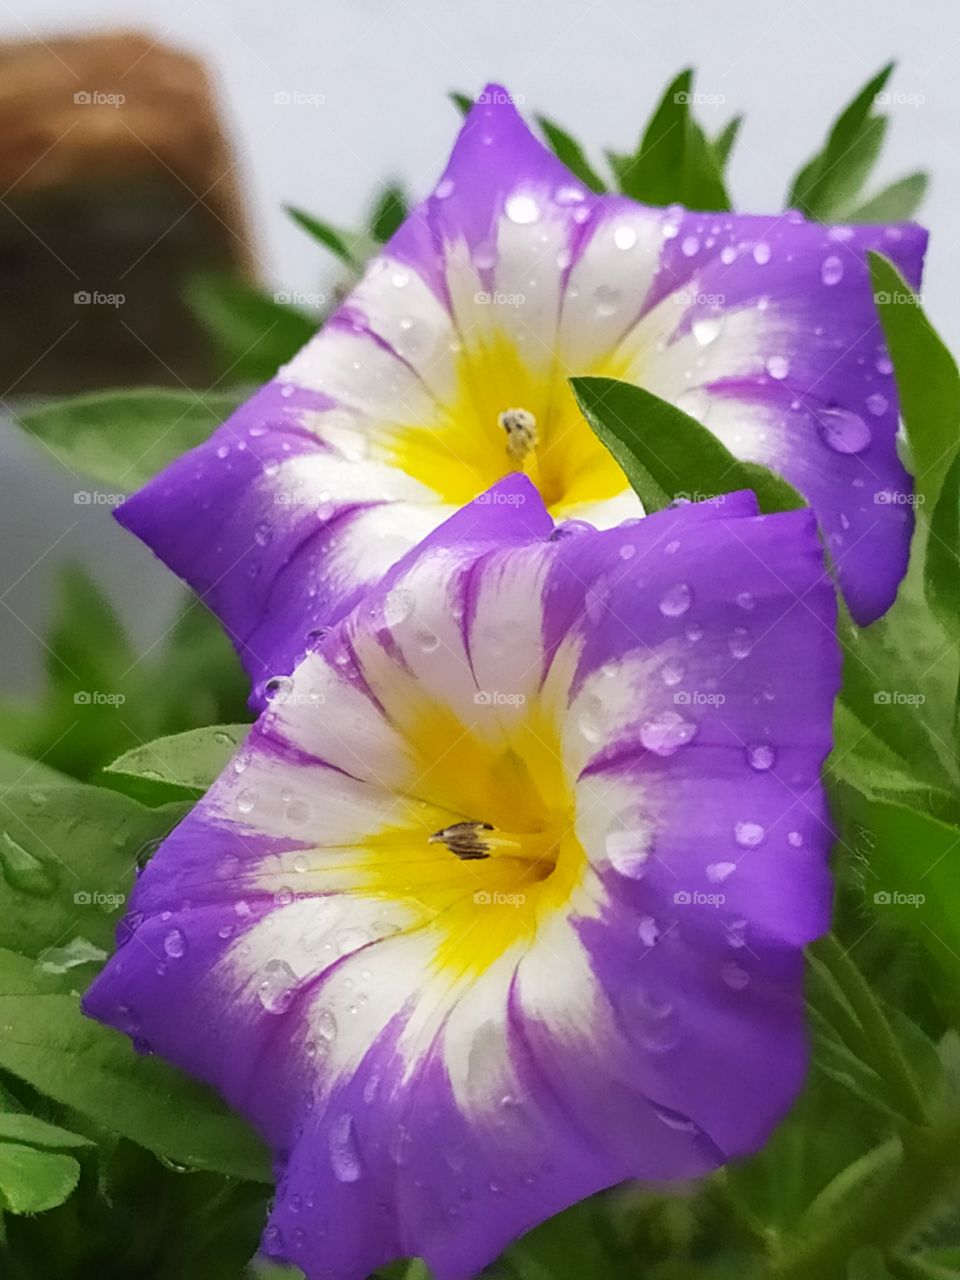 lovely flowers